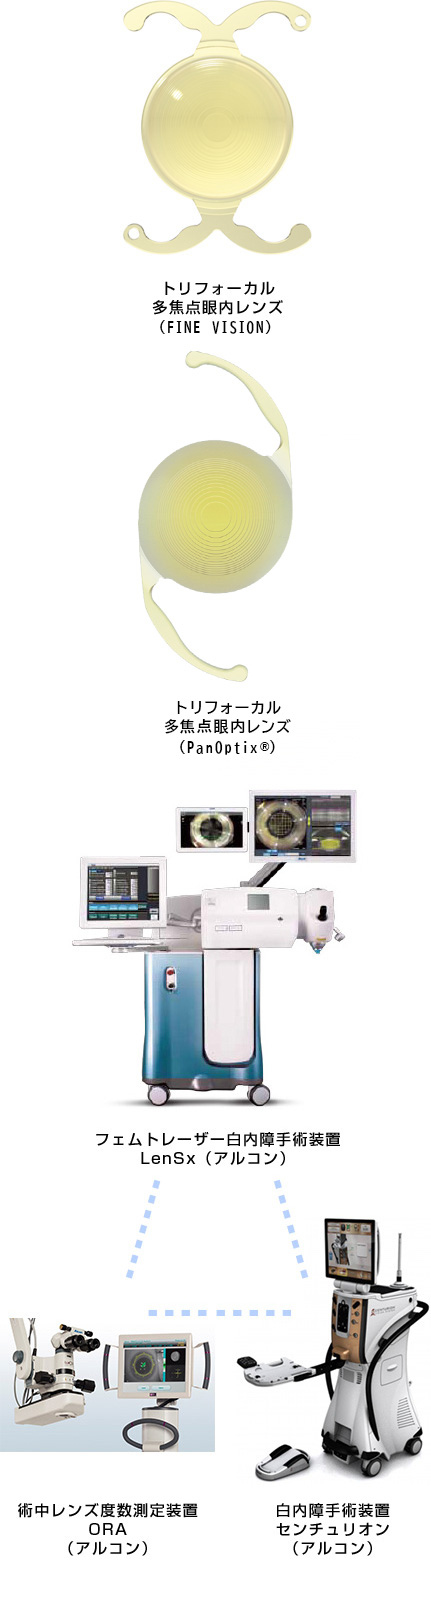 トリフォーカル多焦点眼内レンズ Alcon LenSx®️ 術中レンズ度数測定装置ORA 白内障手術装置センチュリオン